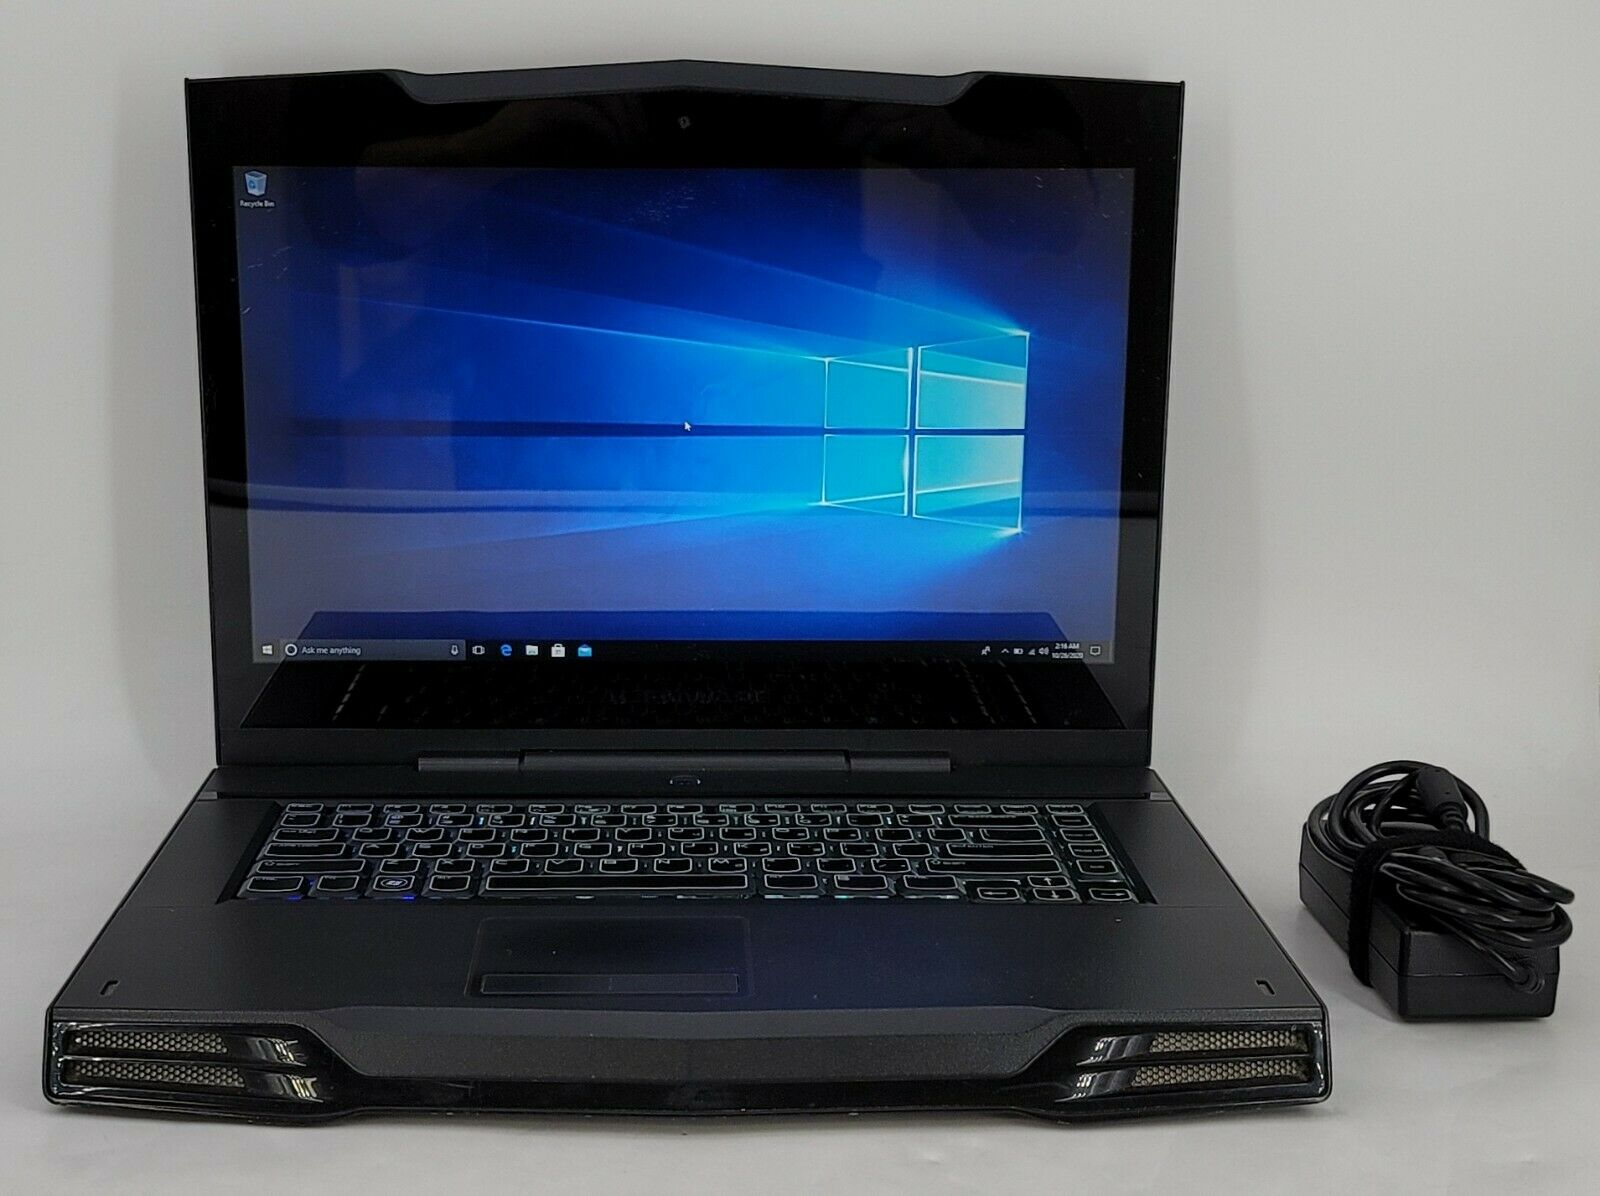 Alienware M15X - 15.6" Laptop - Intel i5-m540 @ 2.53GHz 8GB RAM 250GB SSD & GPU